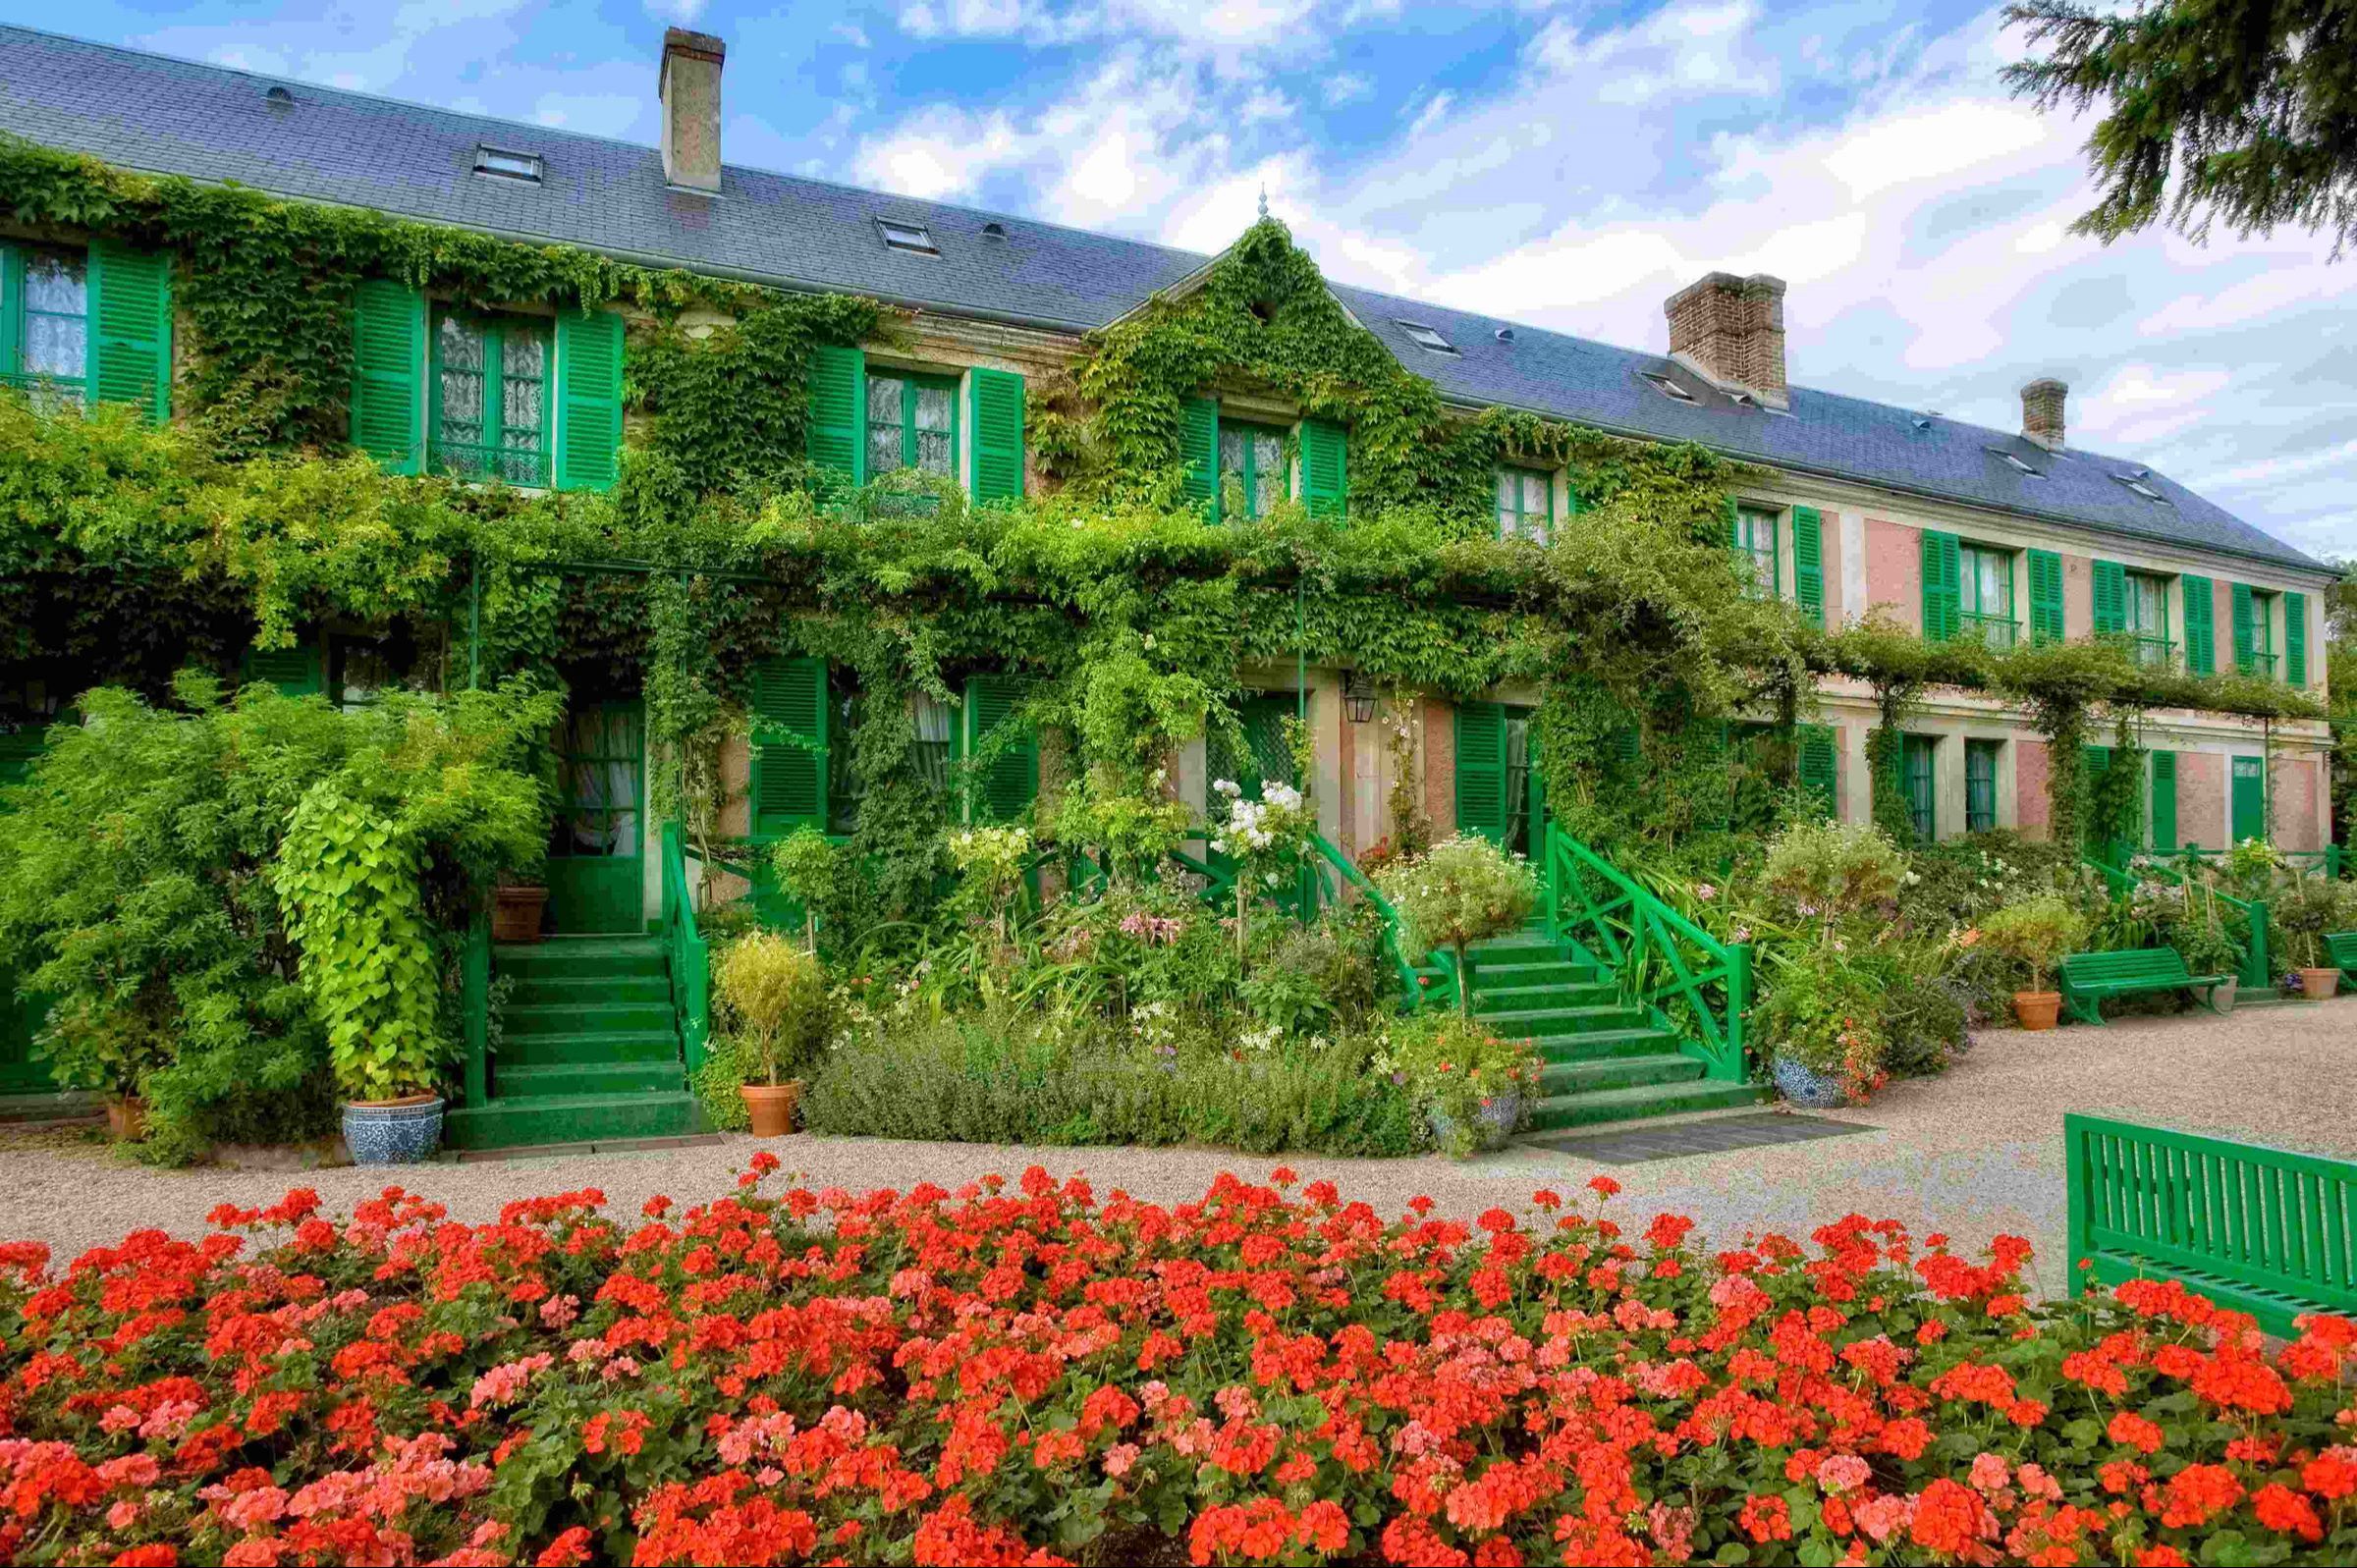 Meio dia de visita áudio-guiada aos Jardins de Giverny Monet a partir de Paris com transporte